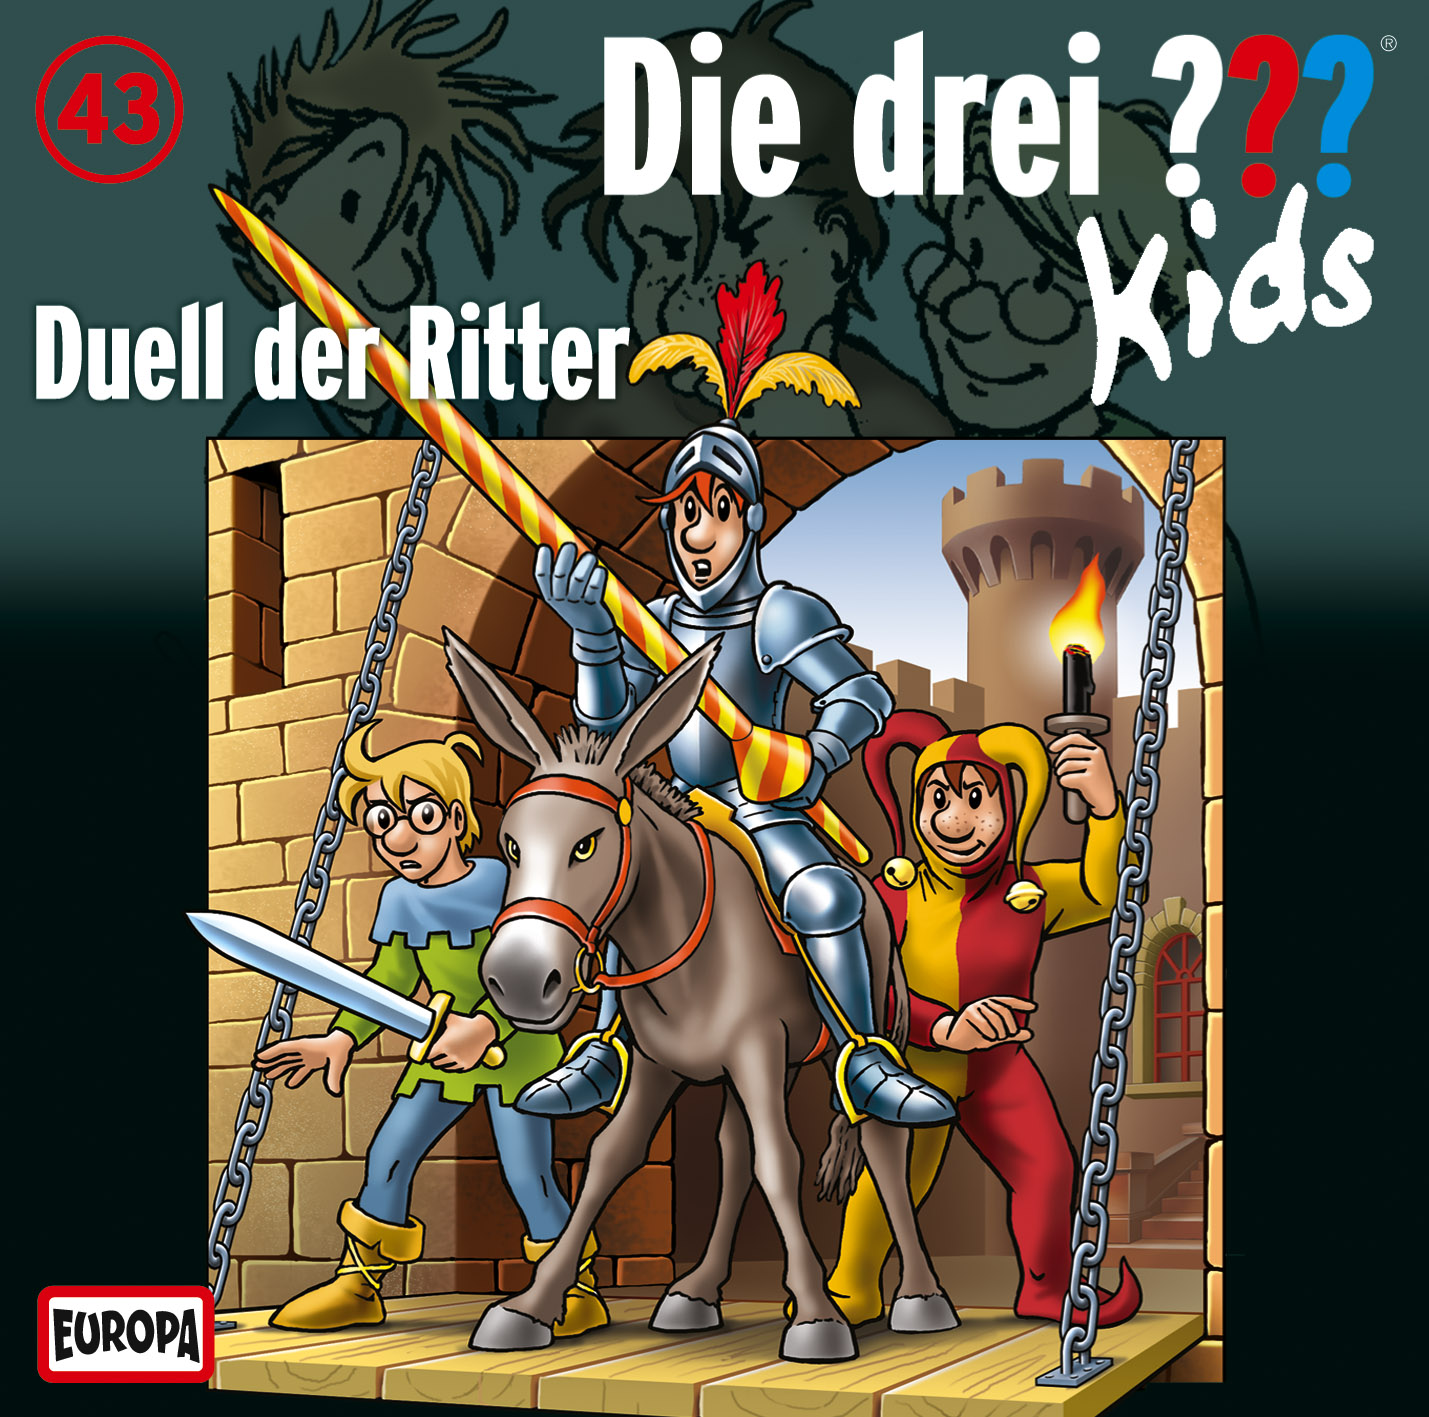 Die Drei ??? (Fragezeichen) Kids, Hörspiel-Folge 43: Duell der Ritter